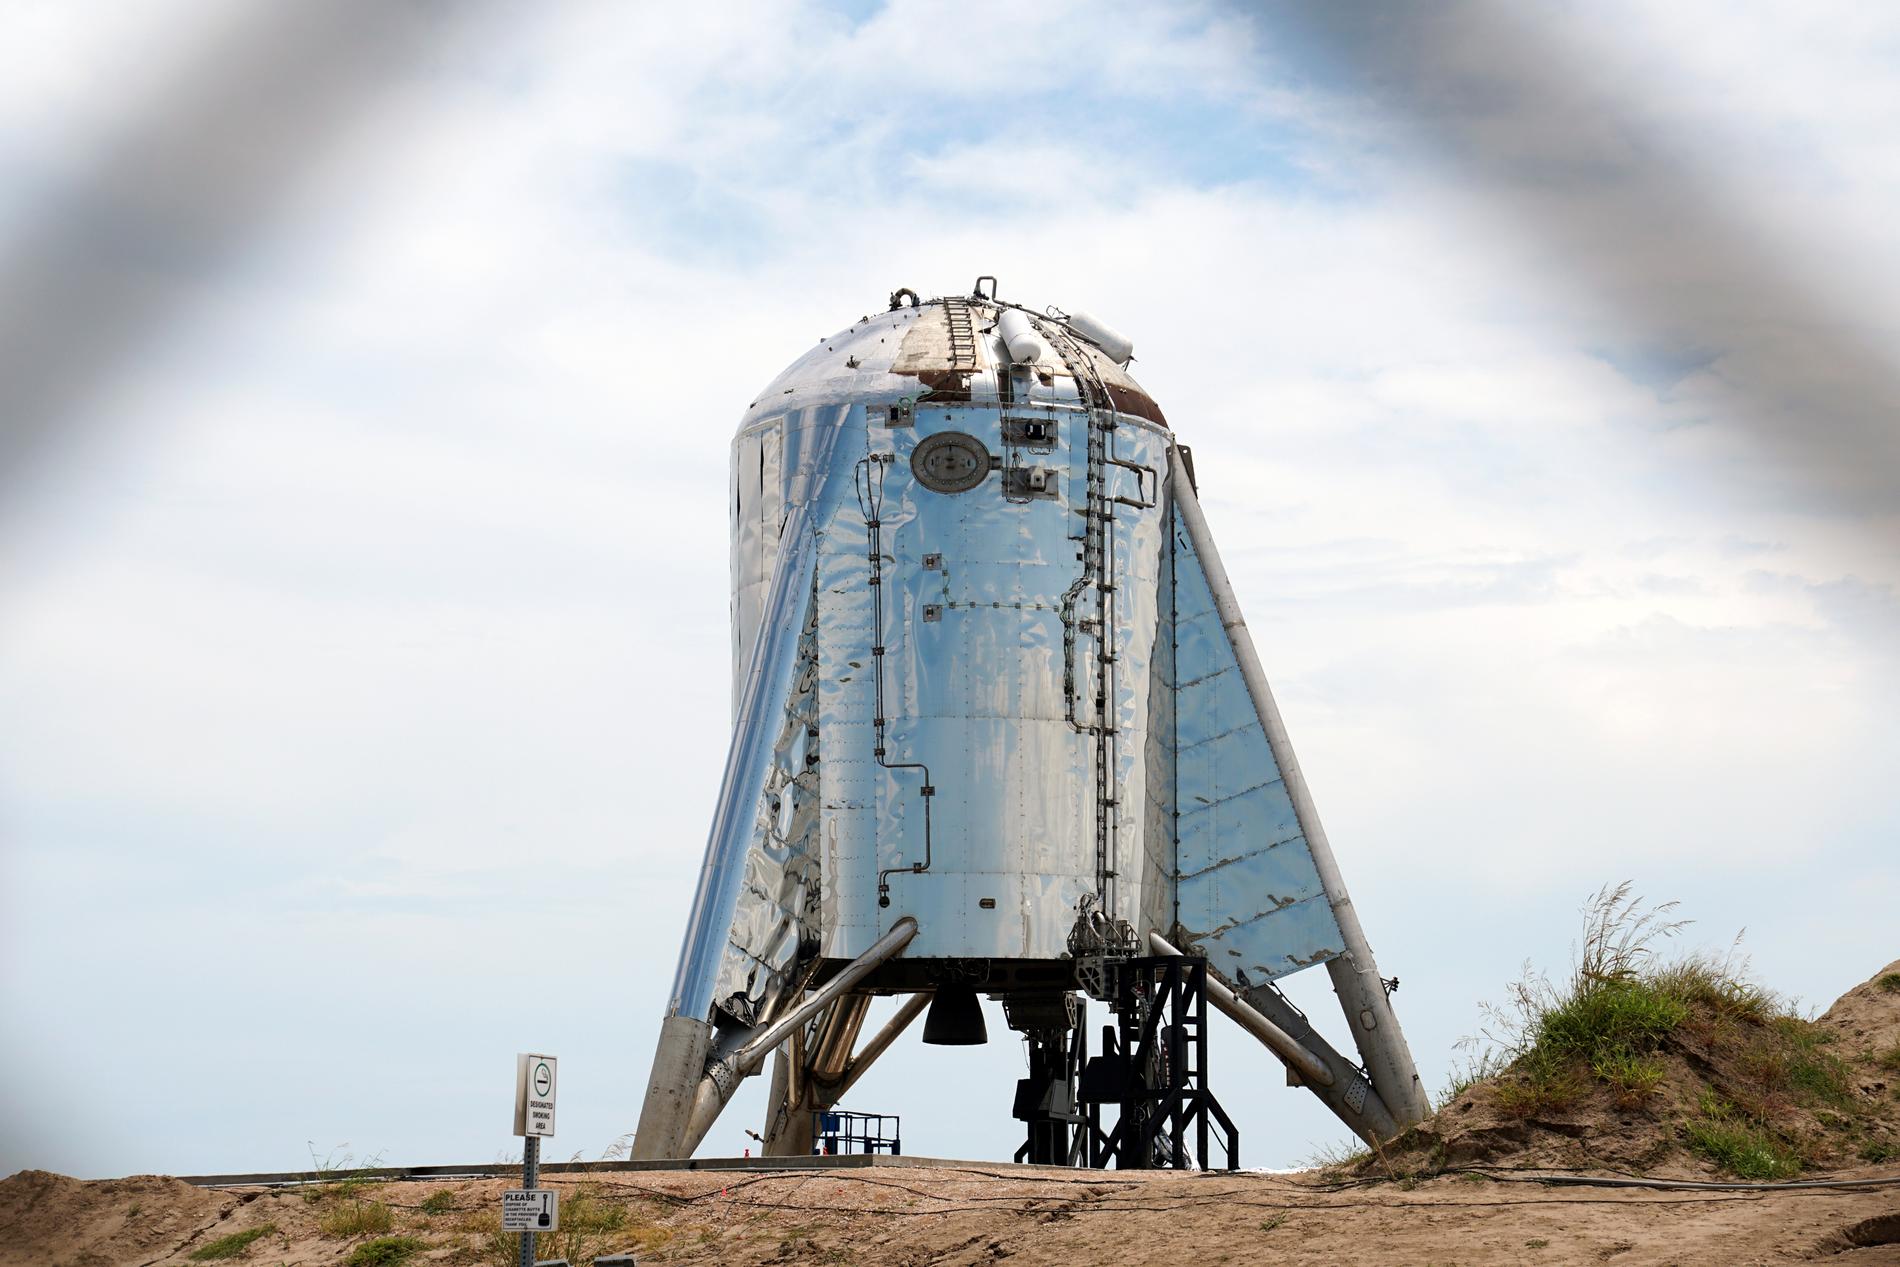 Starhopper är en prototyp, utan noskon, av det rymdskepp som företaget Space X tänkt kalla helt enkelt Starship. Men provkörningarna i Texas går hittills inte riktigt enligt plan.